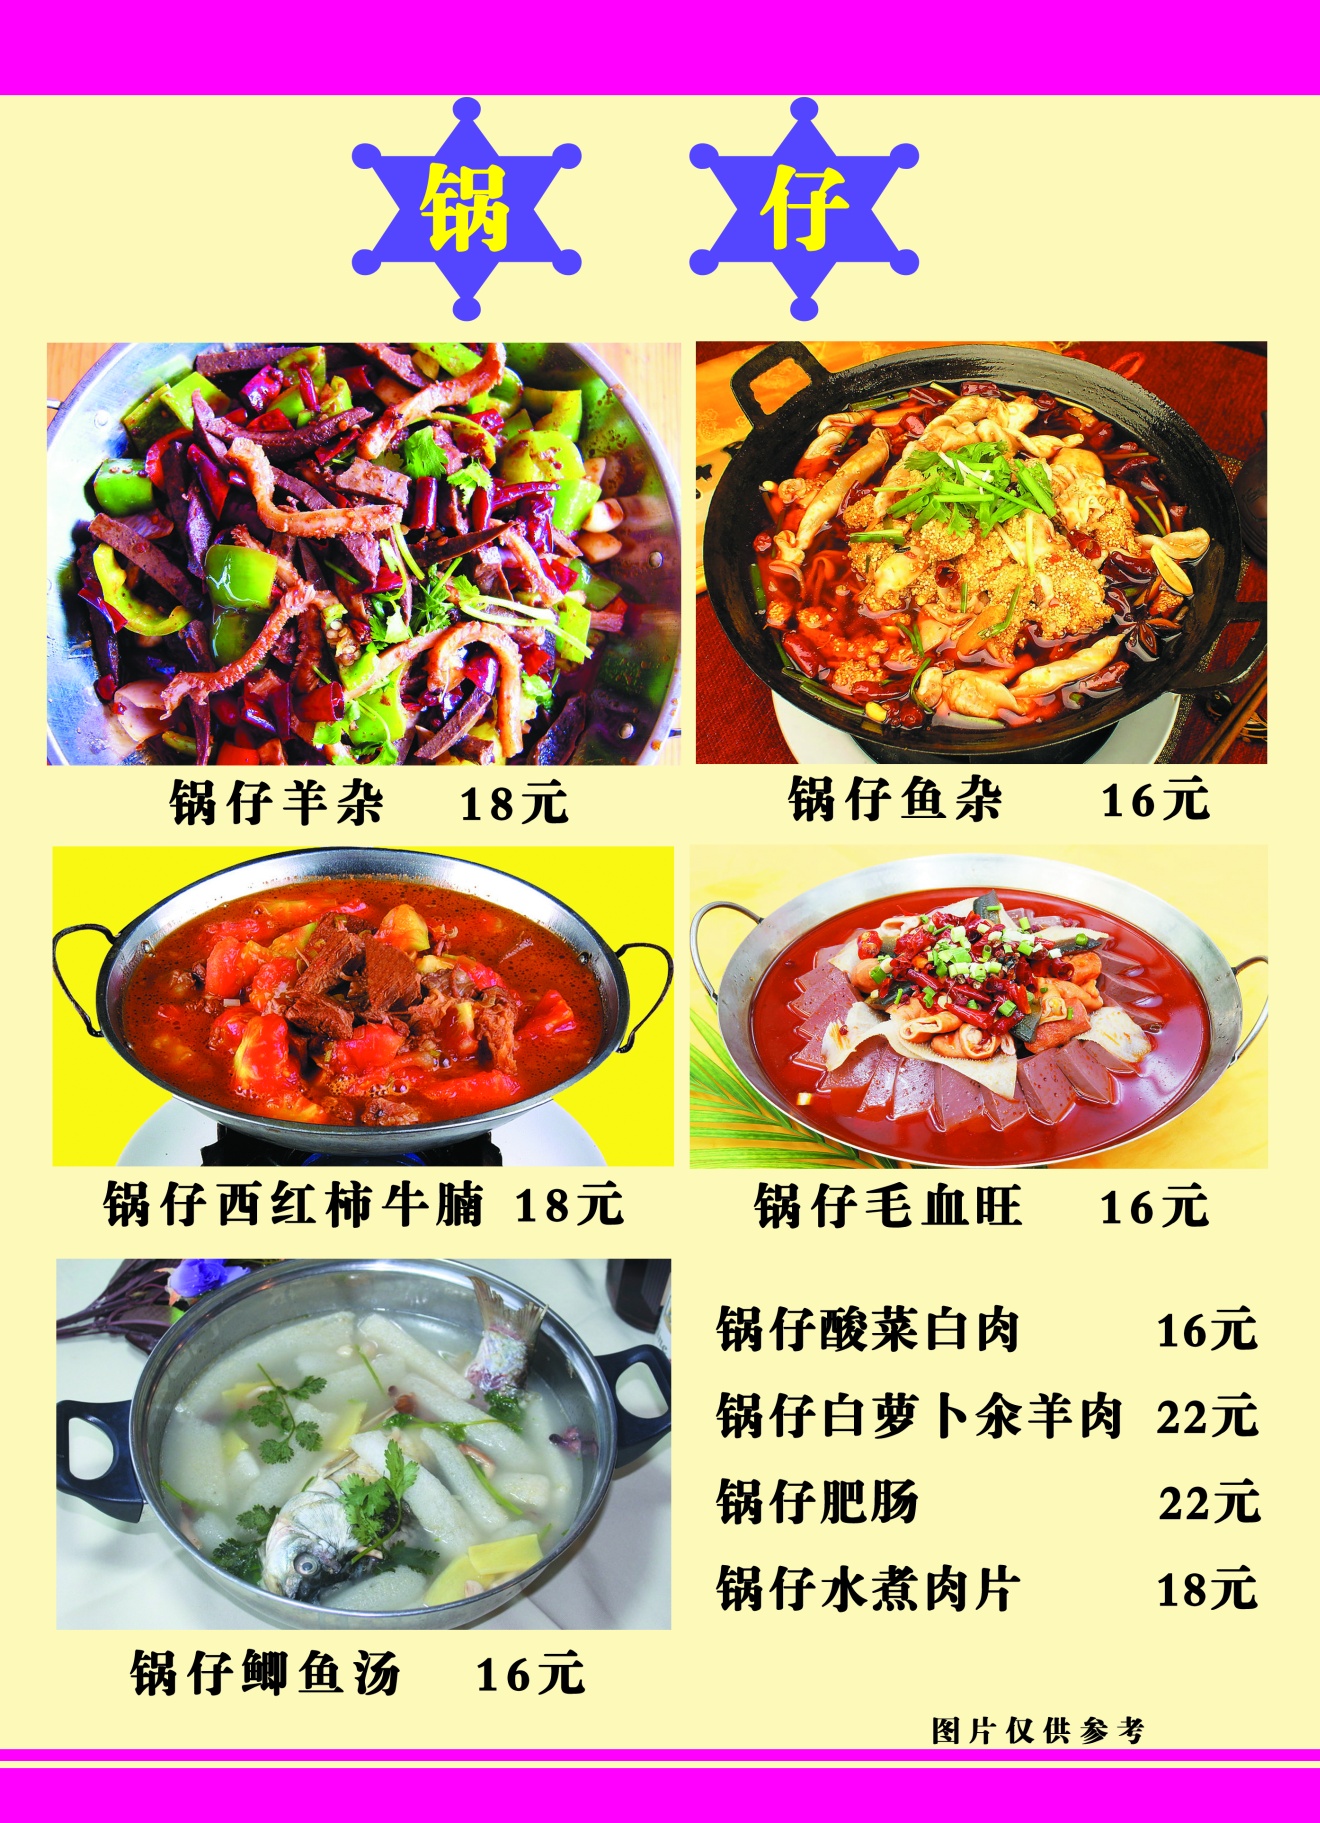 ﻿重庆川菜馆 餐馆菜单 川菜菜谱 海鲜菜谱 满座菜谱